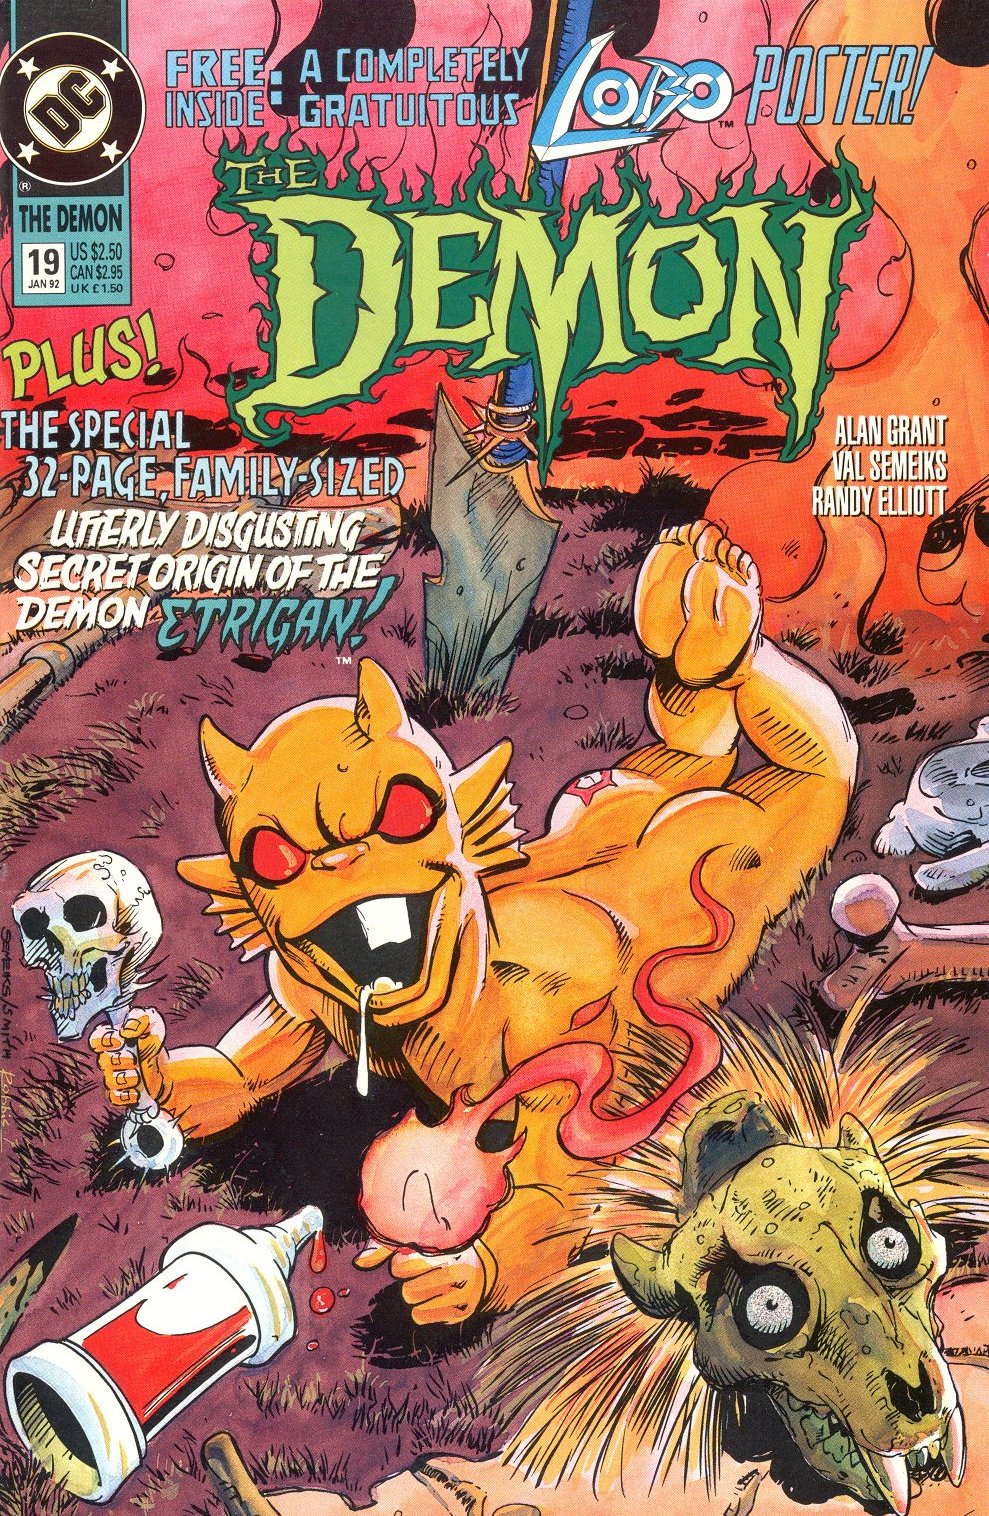 Демон 1990. Комиксы микс. Etrigan the Demon. Den the Demon Comics. Comics Mix.